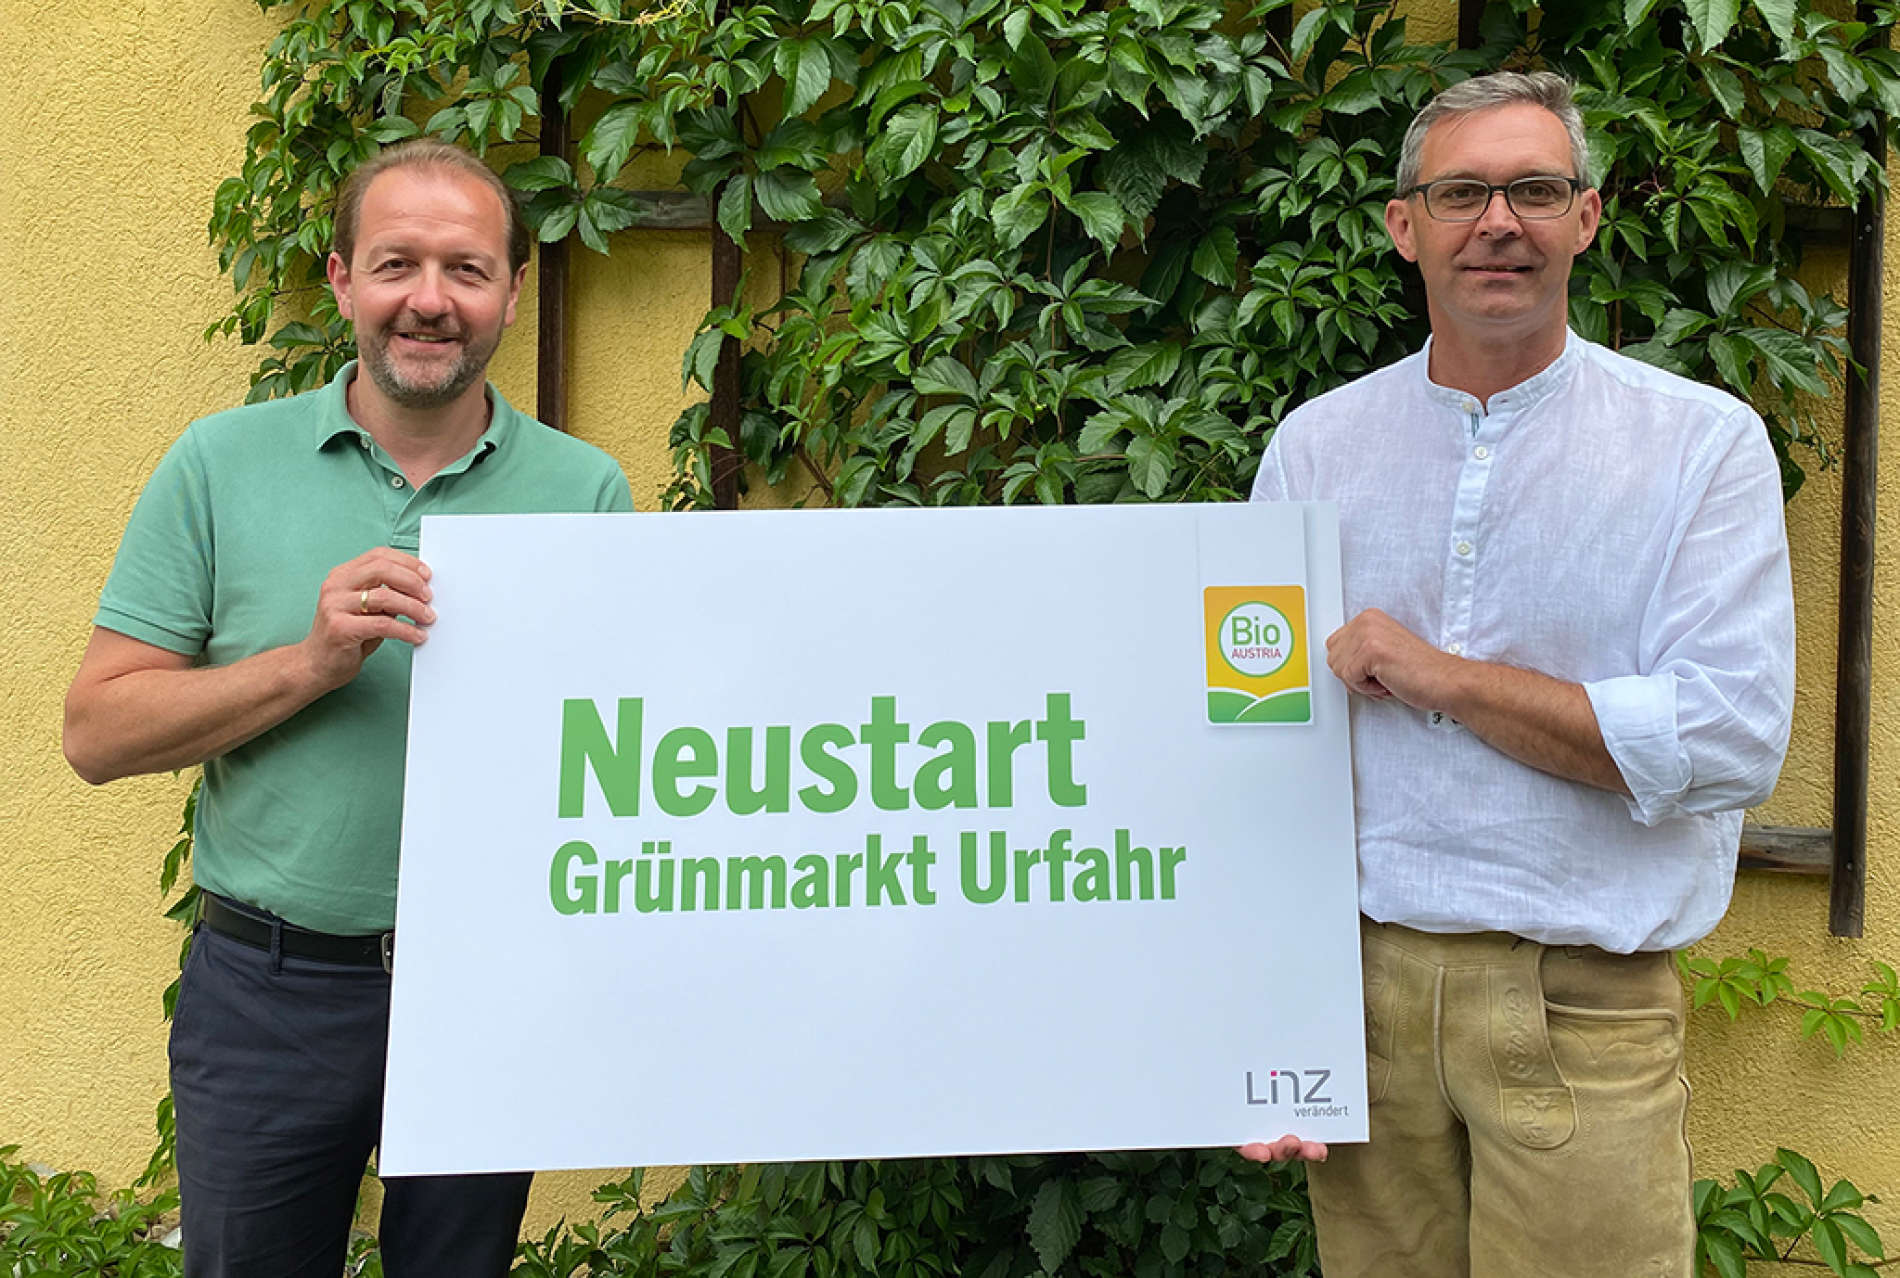 Marktreferent Vbgm. Bernhard Baier (l.) und Franz Waldenberger (Obmann Bio-Austria) wollen gemeinsam für frischen Wind am Grünmarkt in Urfahr sorgen.